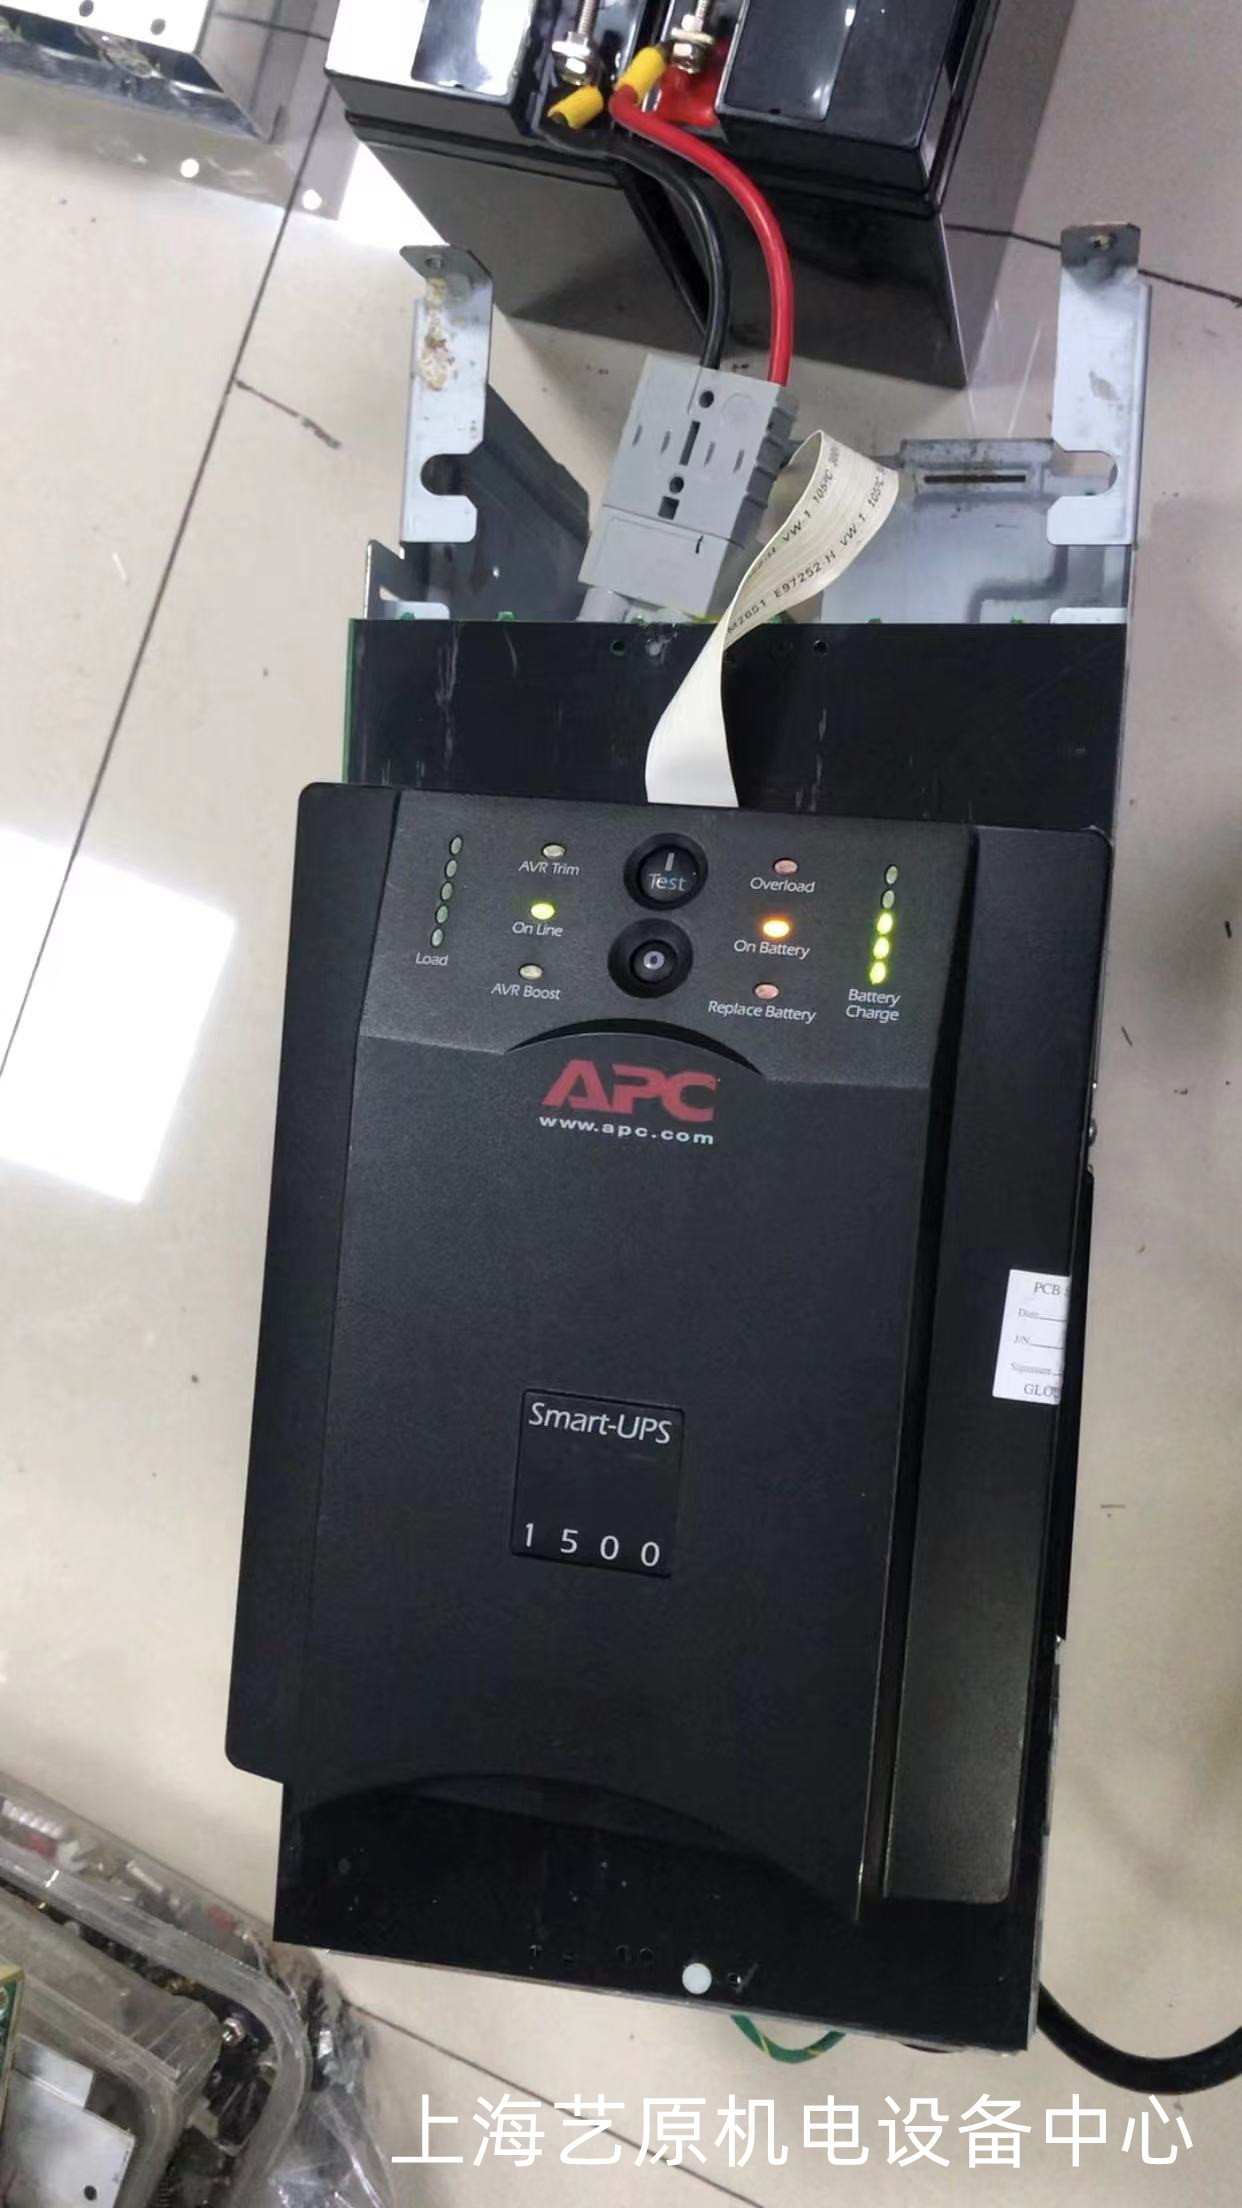 宜宾APC-Smart-UPS-1500不间断电源维修上电无反应 工业电源